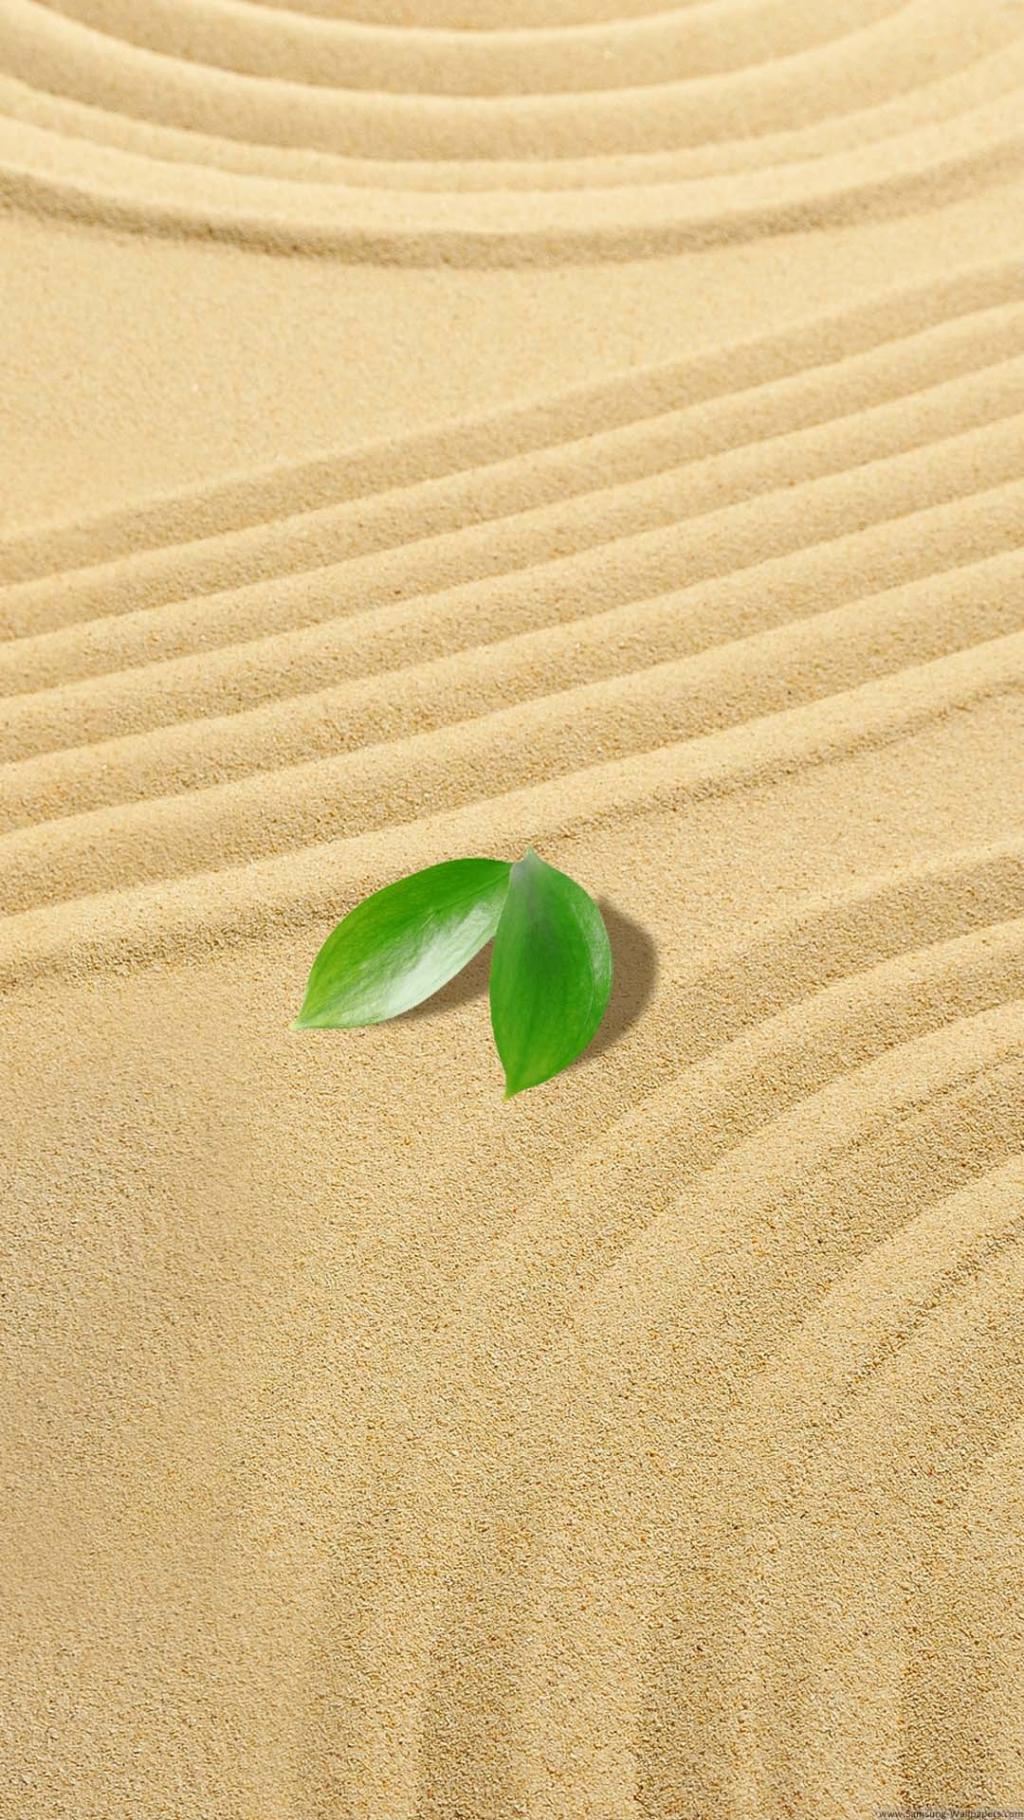 小绿叶沙子iPhone 6加高清壁纸